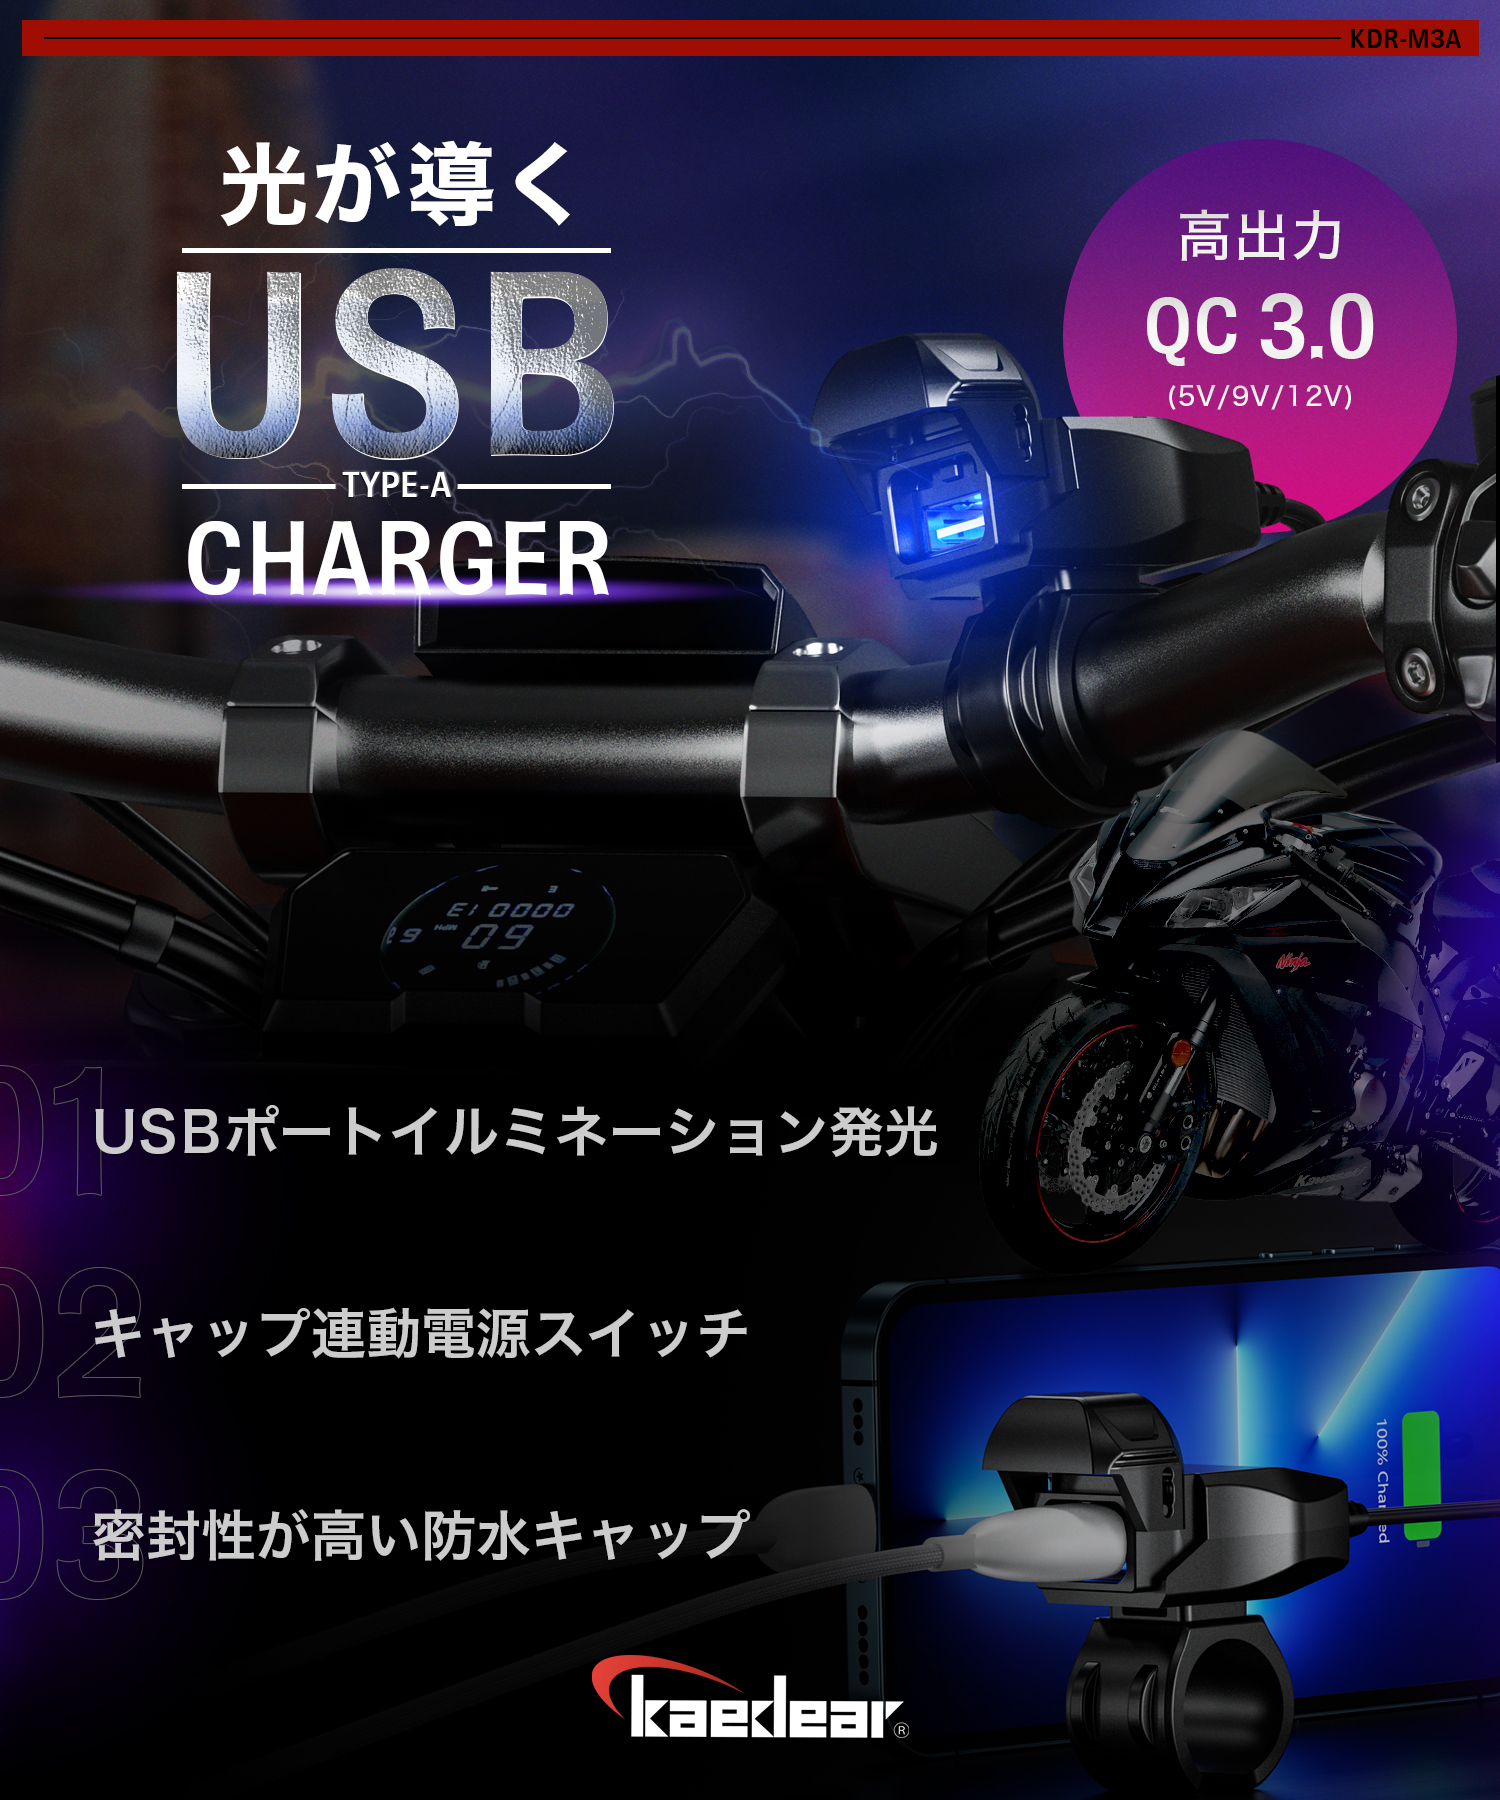  мотоцикл USB источник питания модель AC водонепроницаемый мотоцикл специальный USB смартфон зарядка USB порт SAE DC 12V плавкий предохранитель источник питания переключатель illumination Kaedearka Эдди aKDR-M3A-C